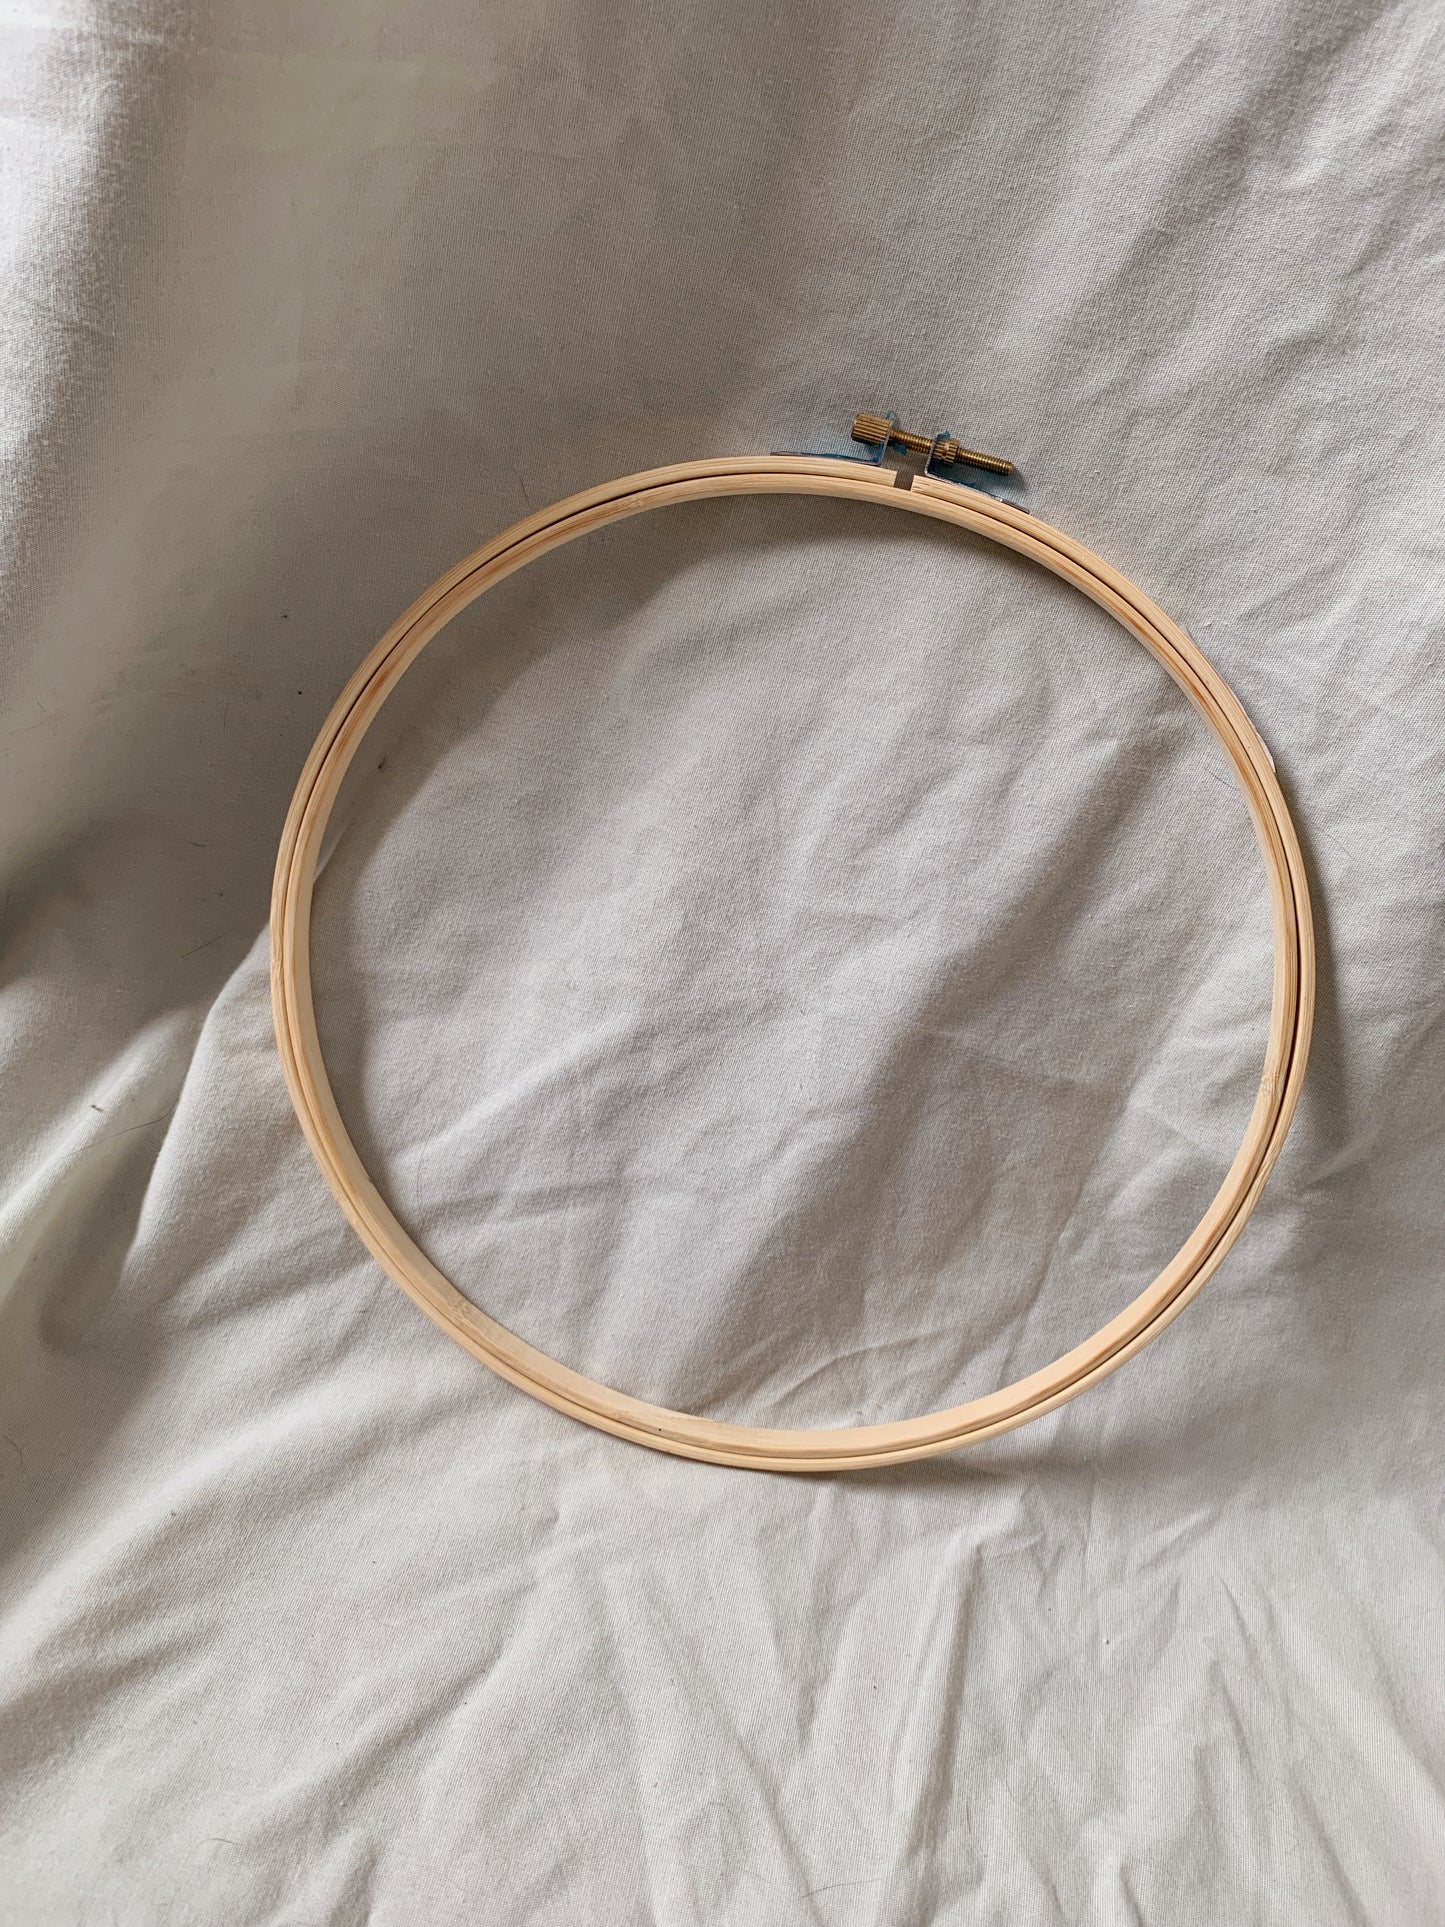 10” Embroidery Hoop